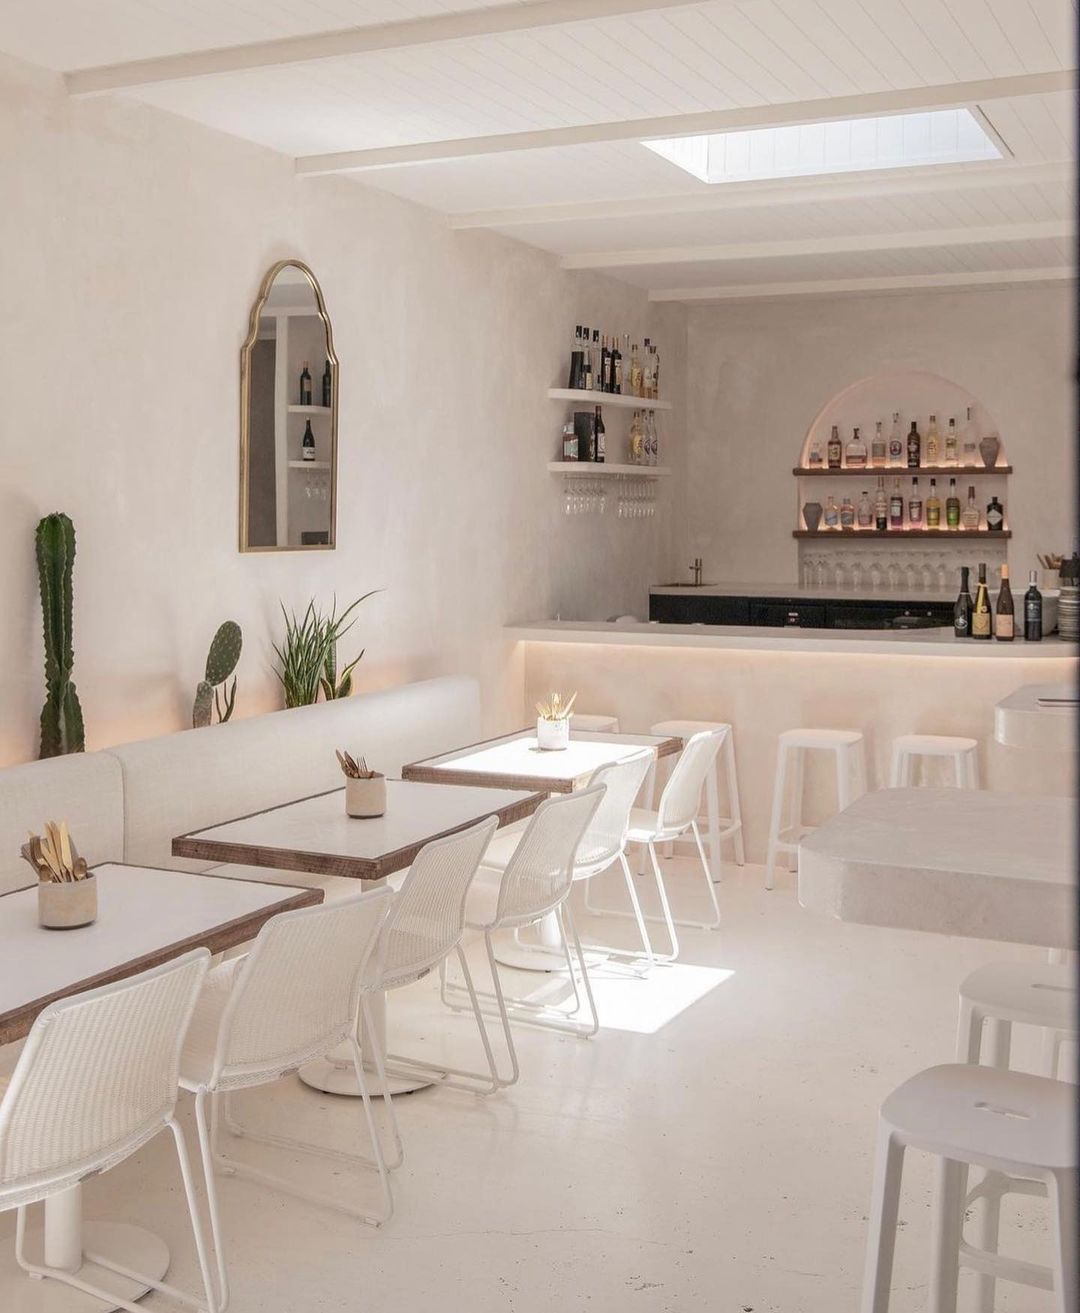 la bella cellar - all-white Mediterranean cafe